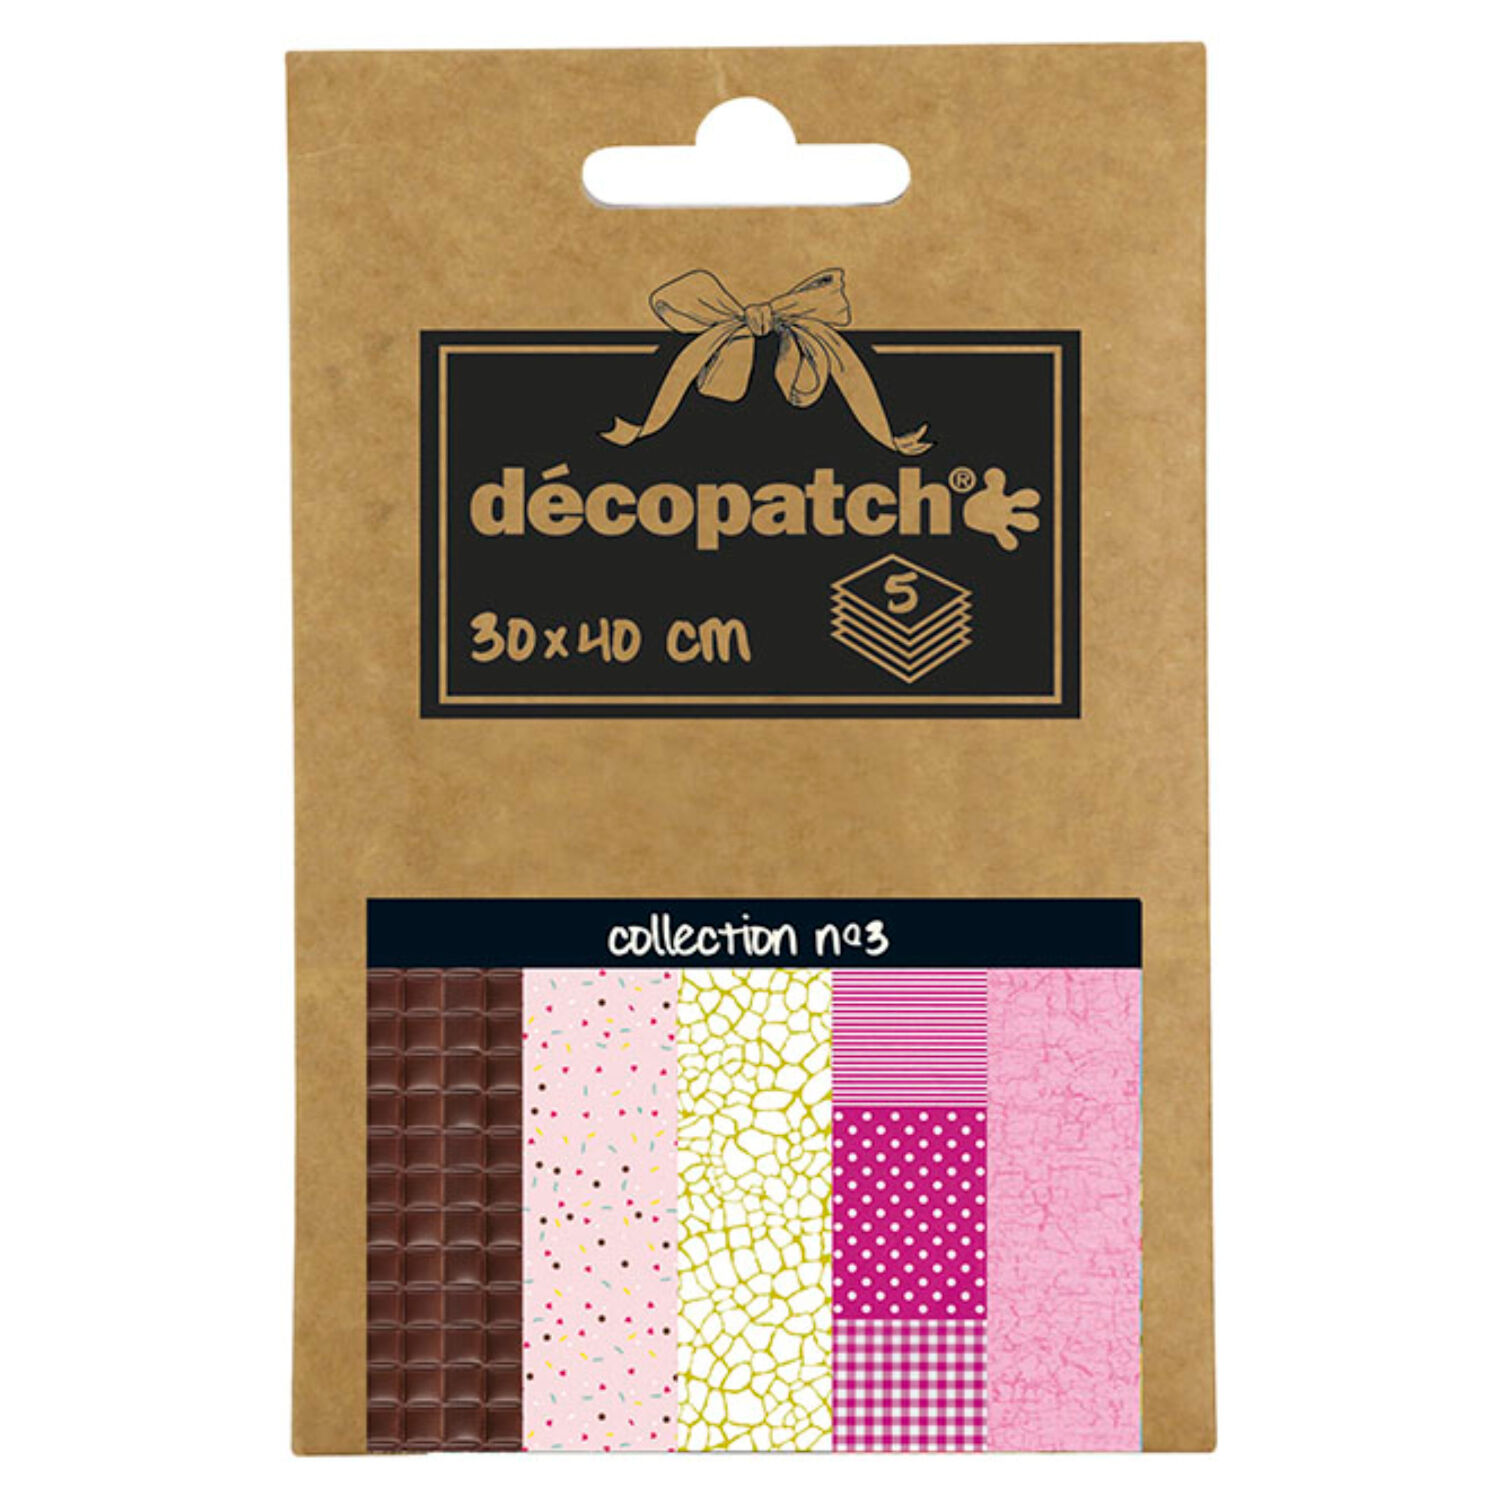 NEU Decoupage- / Decopatch-Papier Pocket-Sortierung, 5 Bogen 30 x 40 cm, Motive: 680, 681, 540, 486, 299